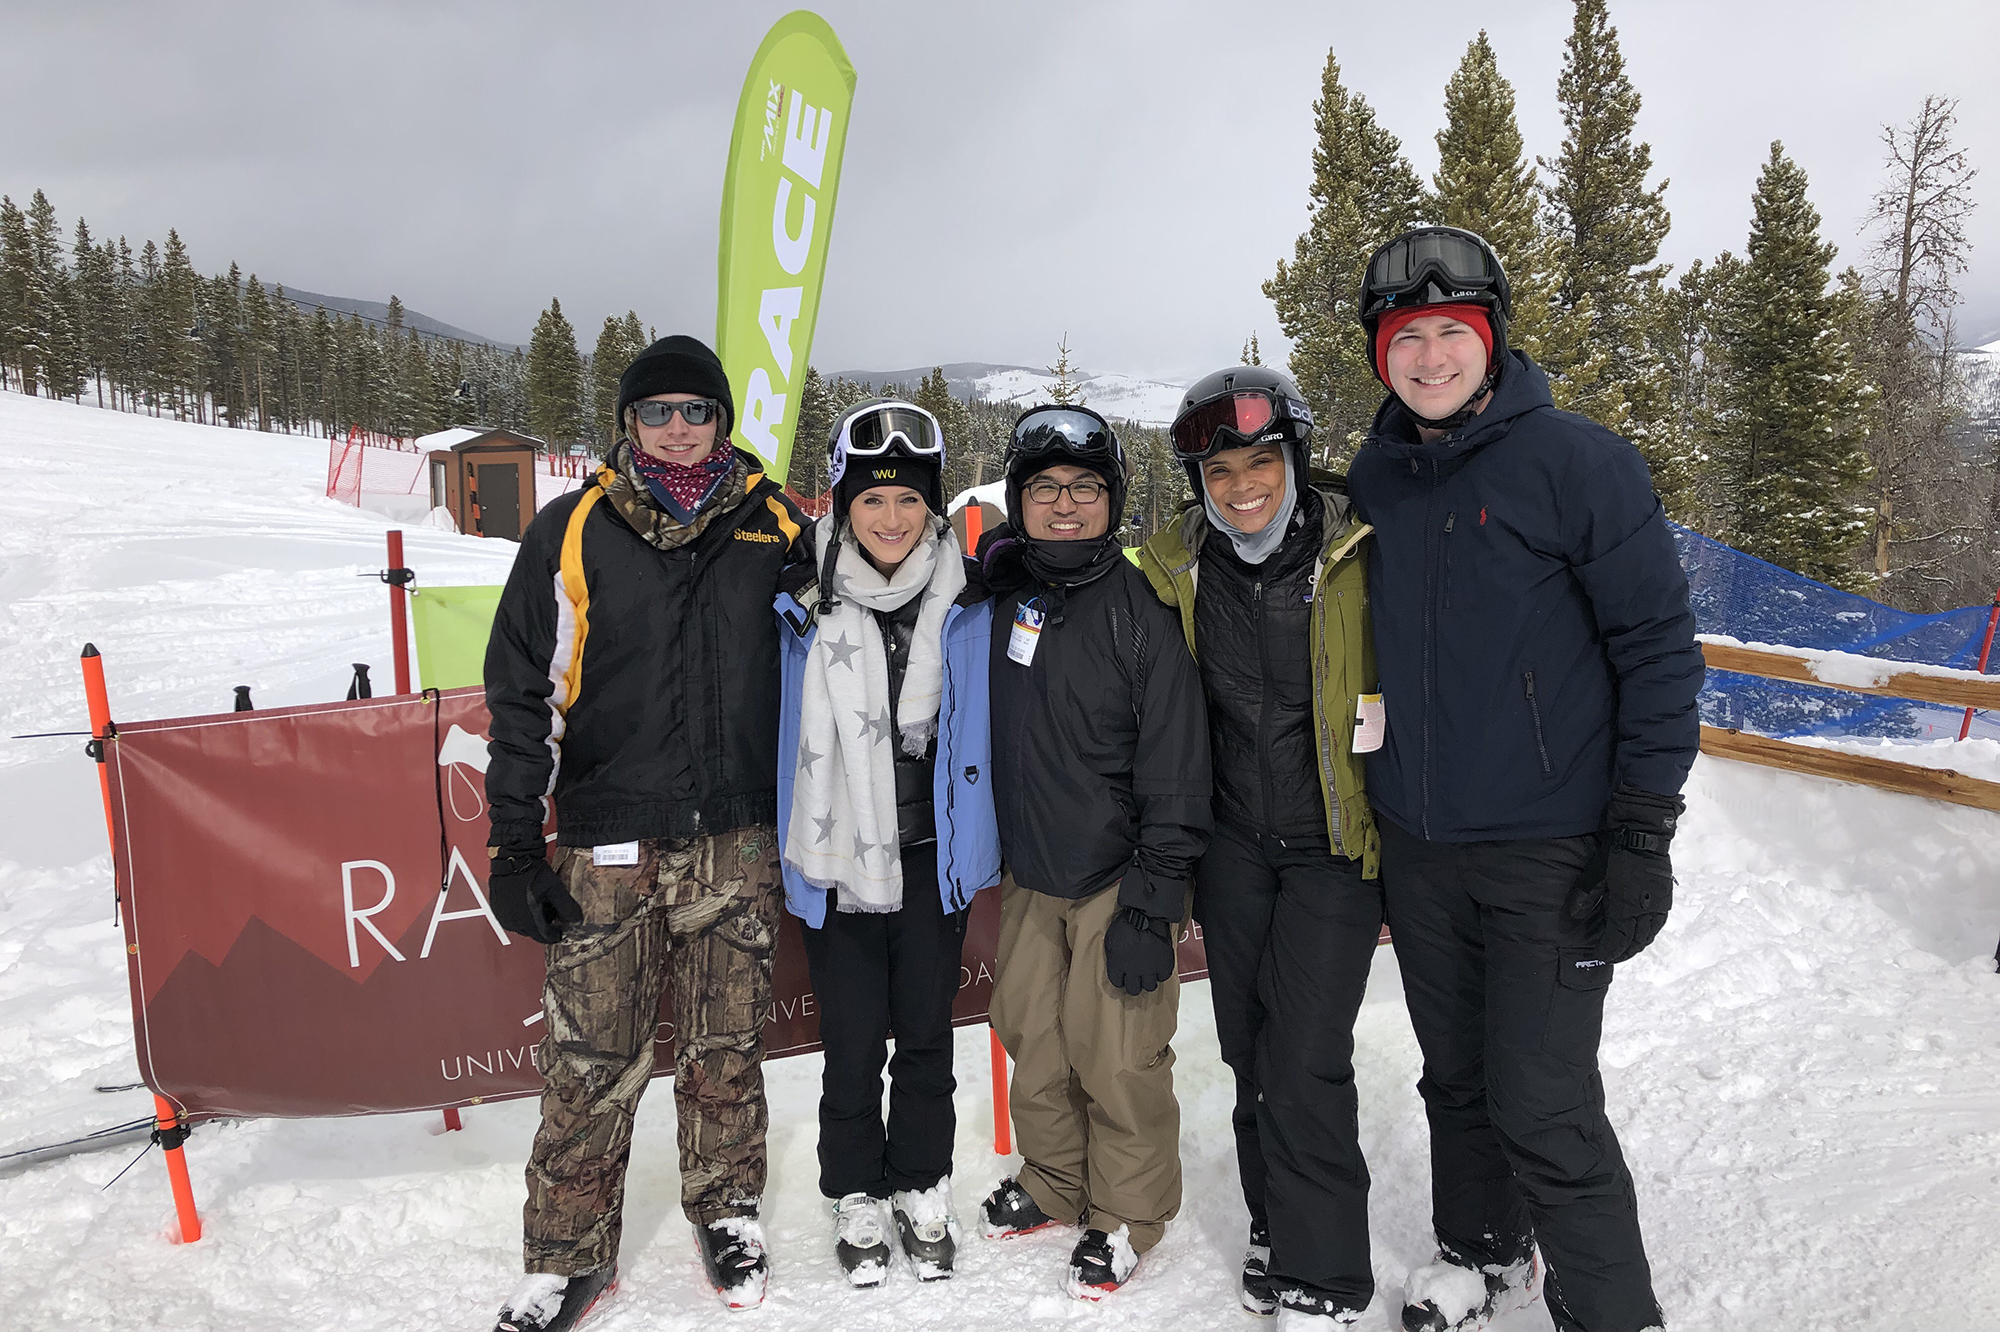 Case team standing on the ski slopes.